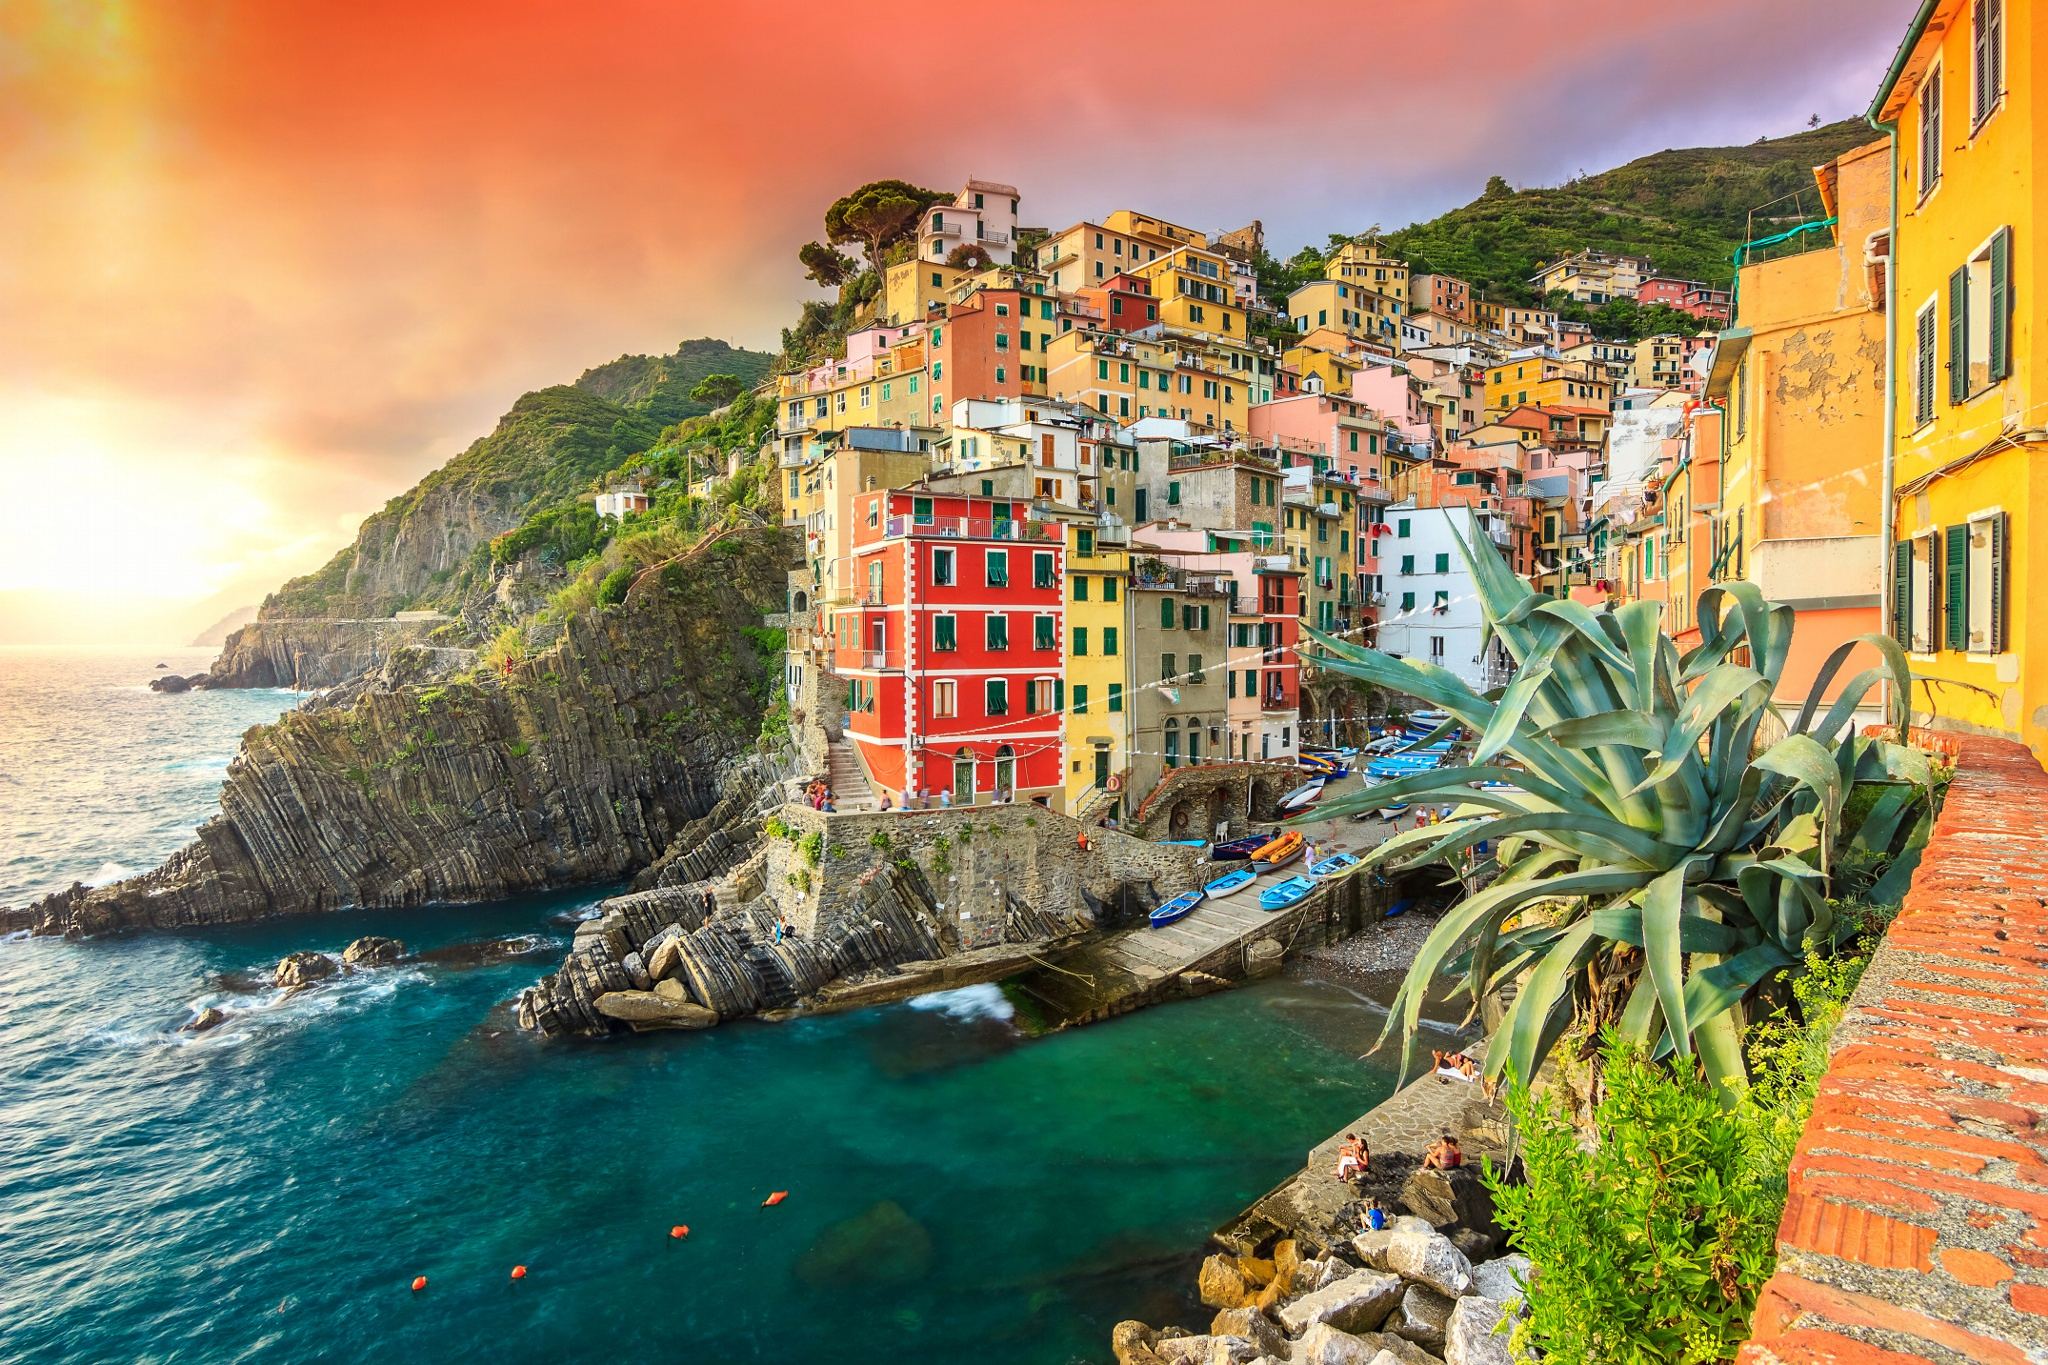 Riomaggiore village on the Cinque Terre coast of Italy,Europe